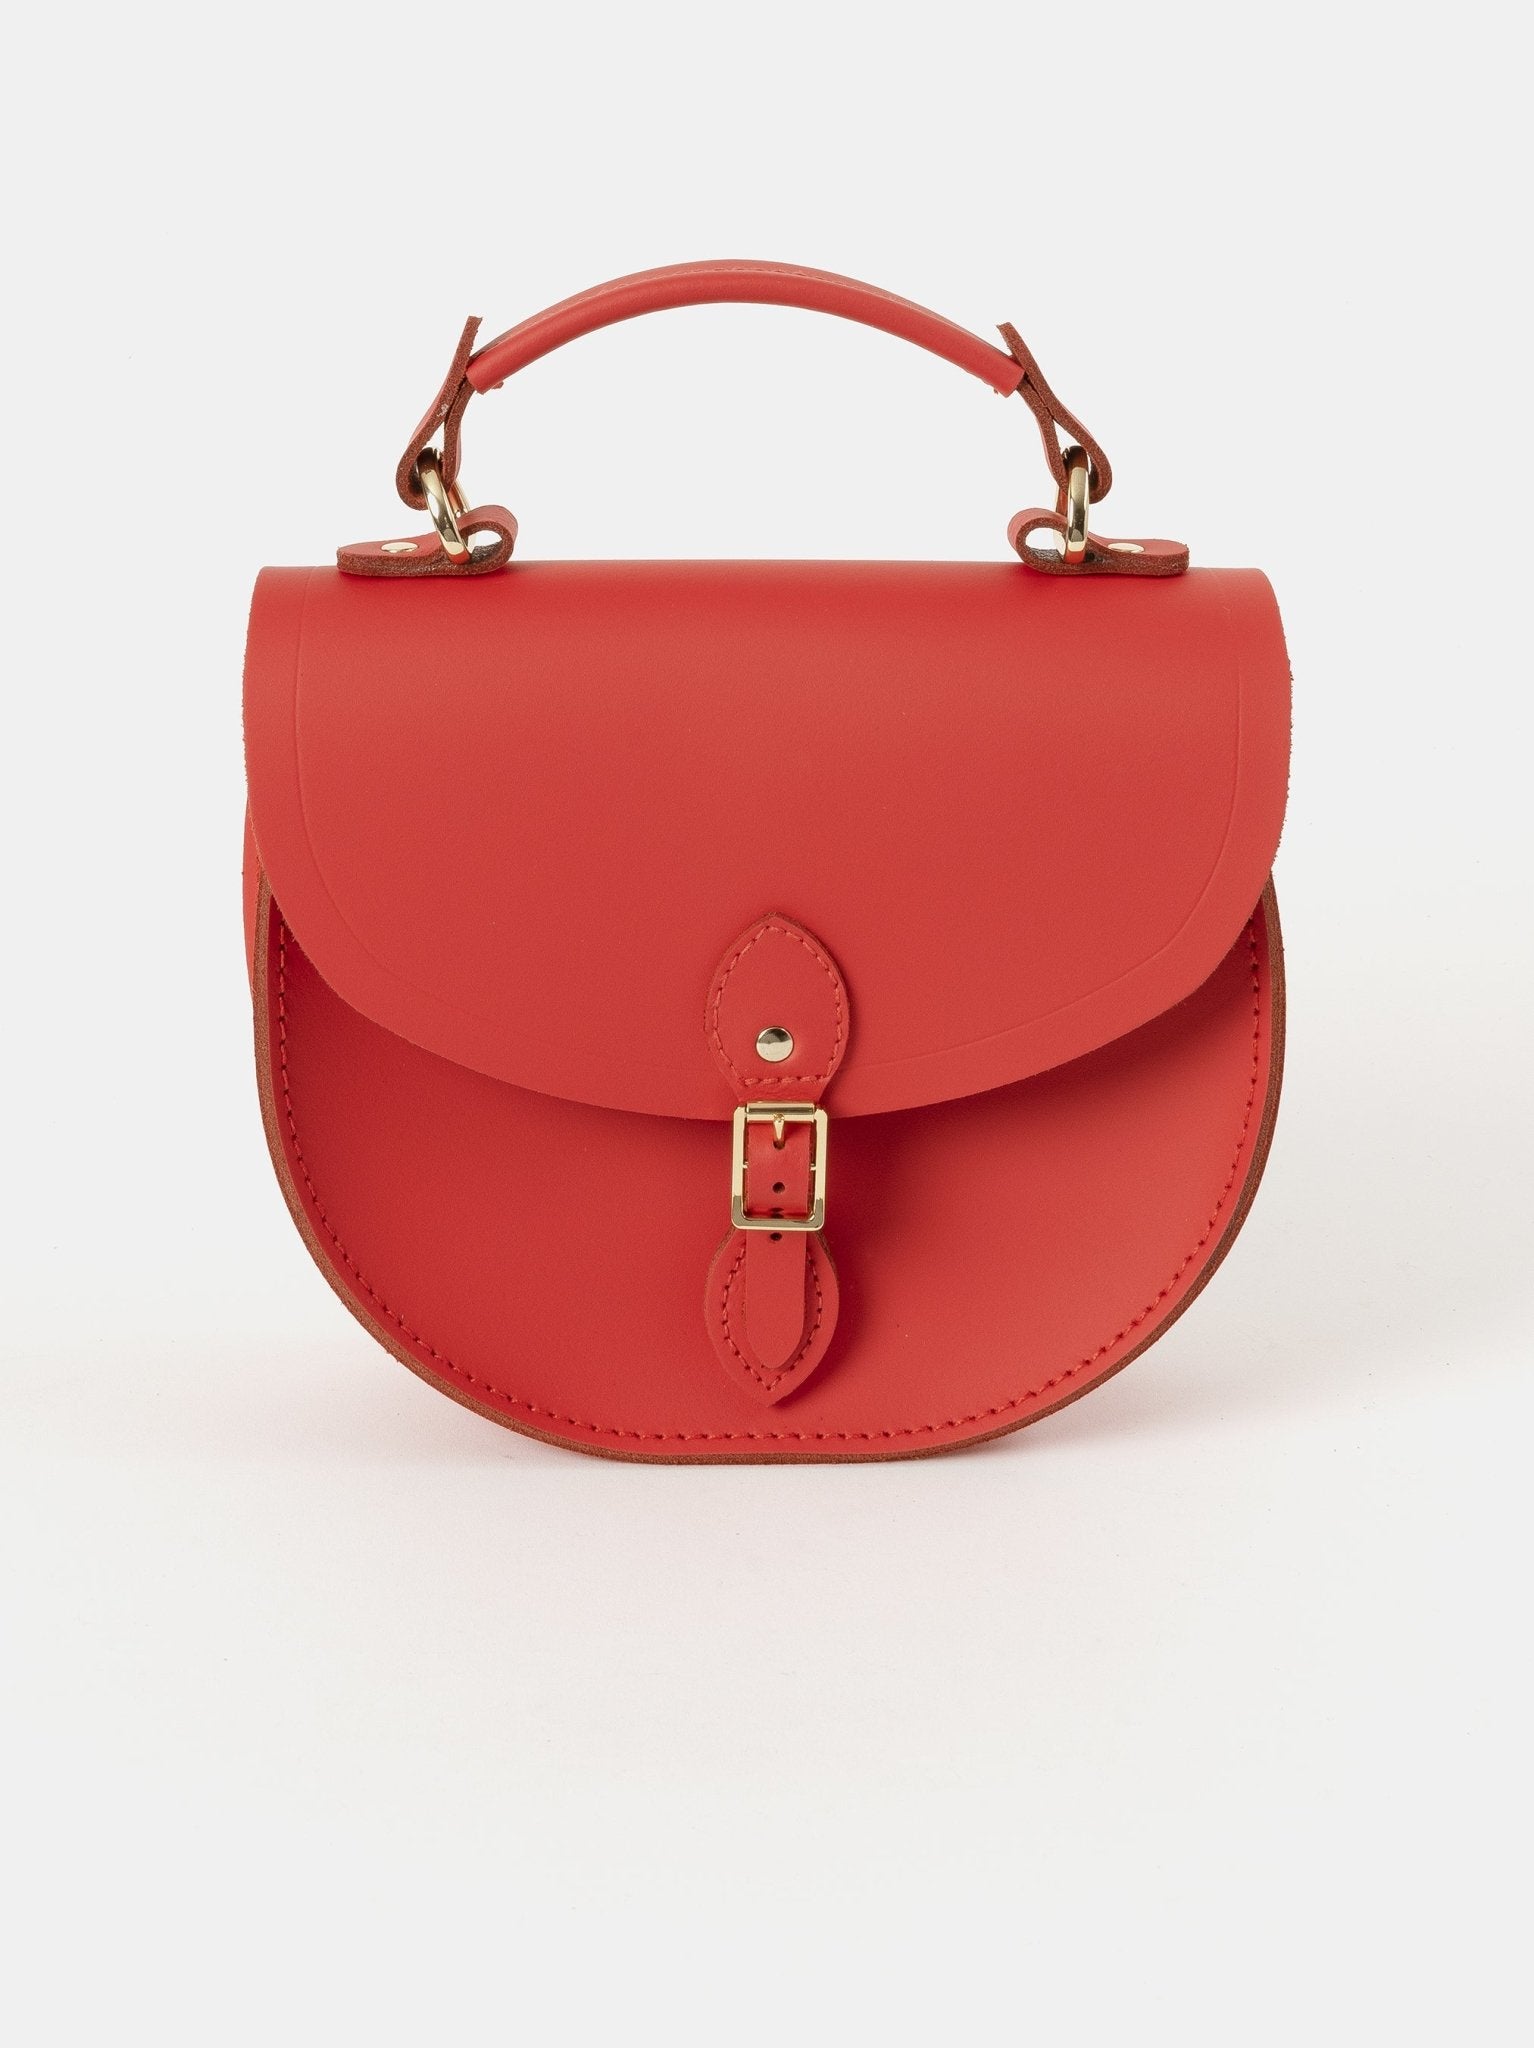 The Cambridge Satchel Co. Women's Red Handbag